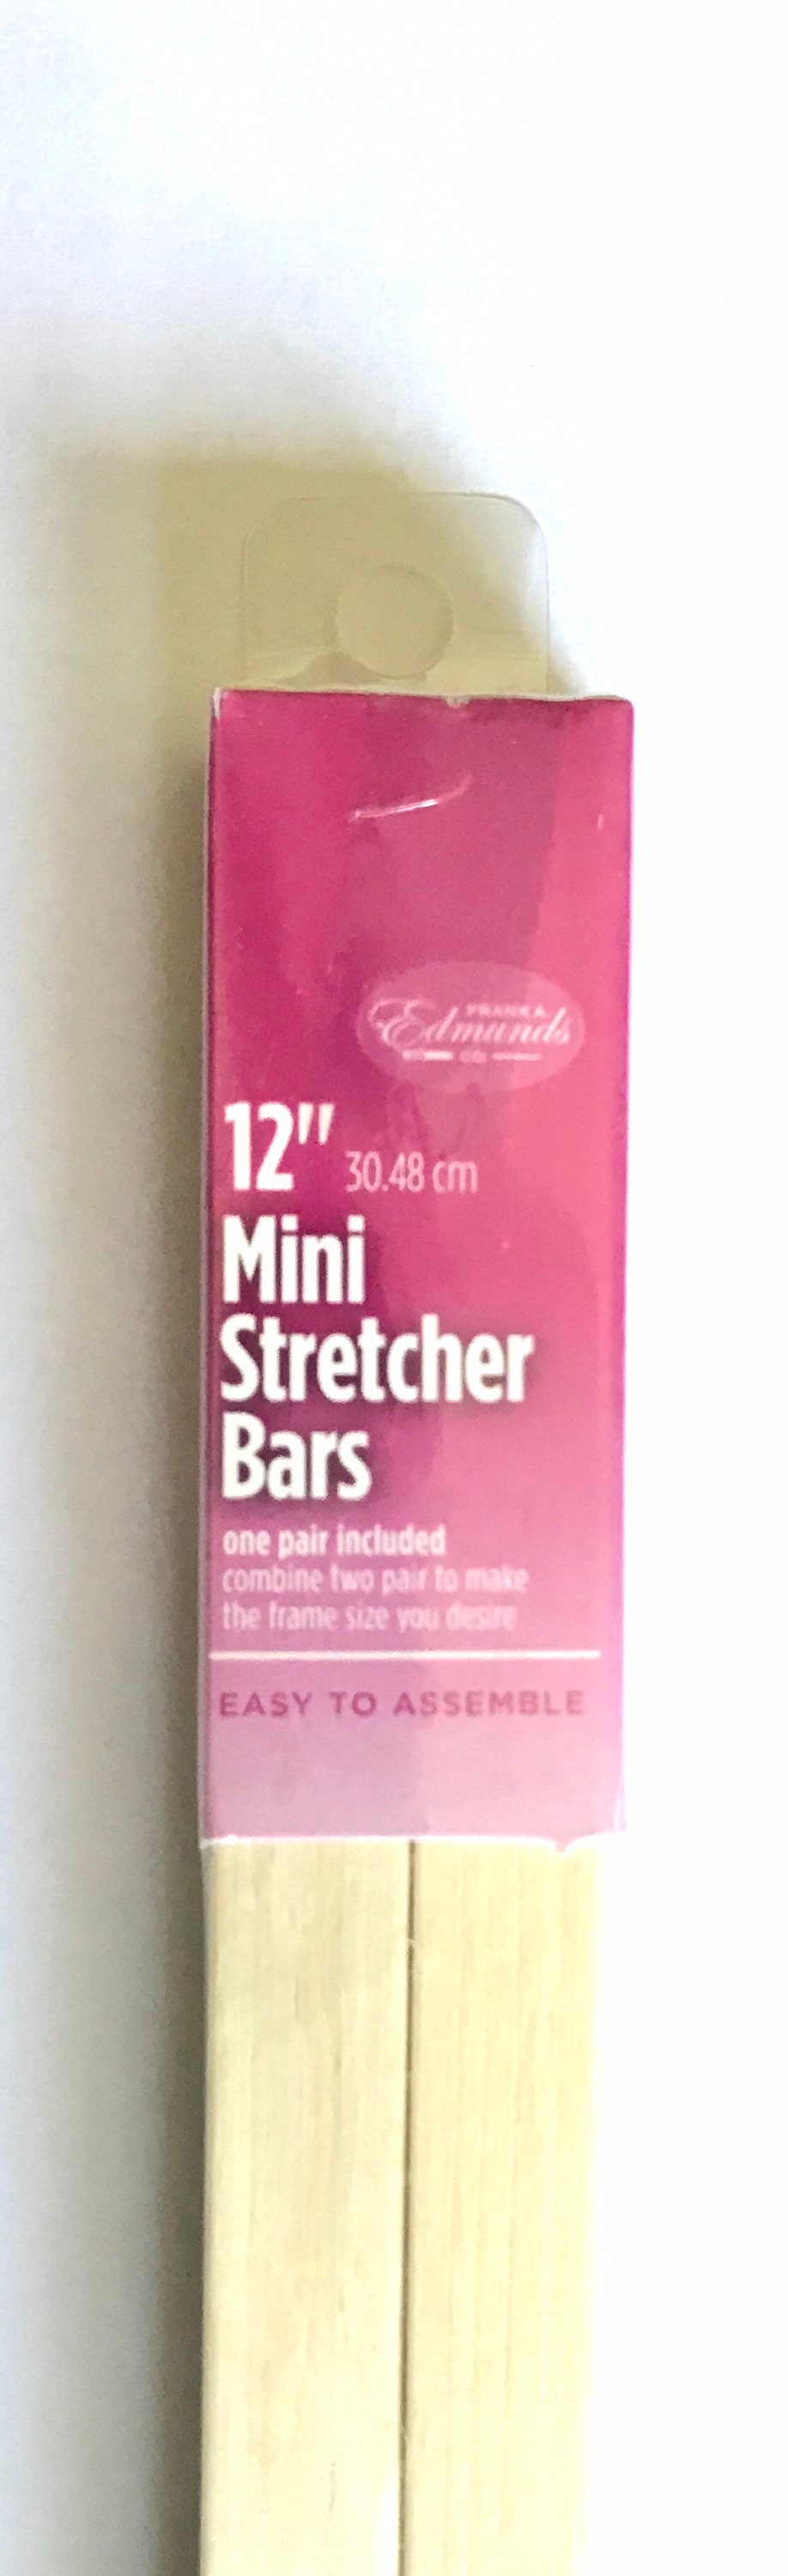 Edmunds Mini Stretcher Bars 6x.5